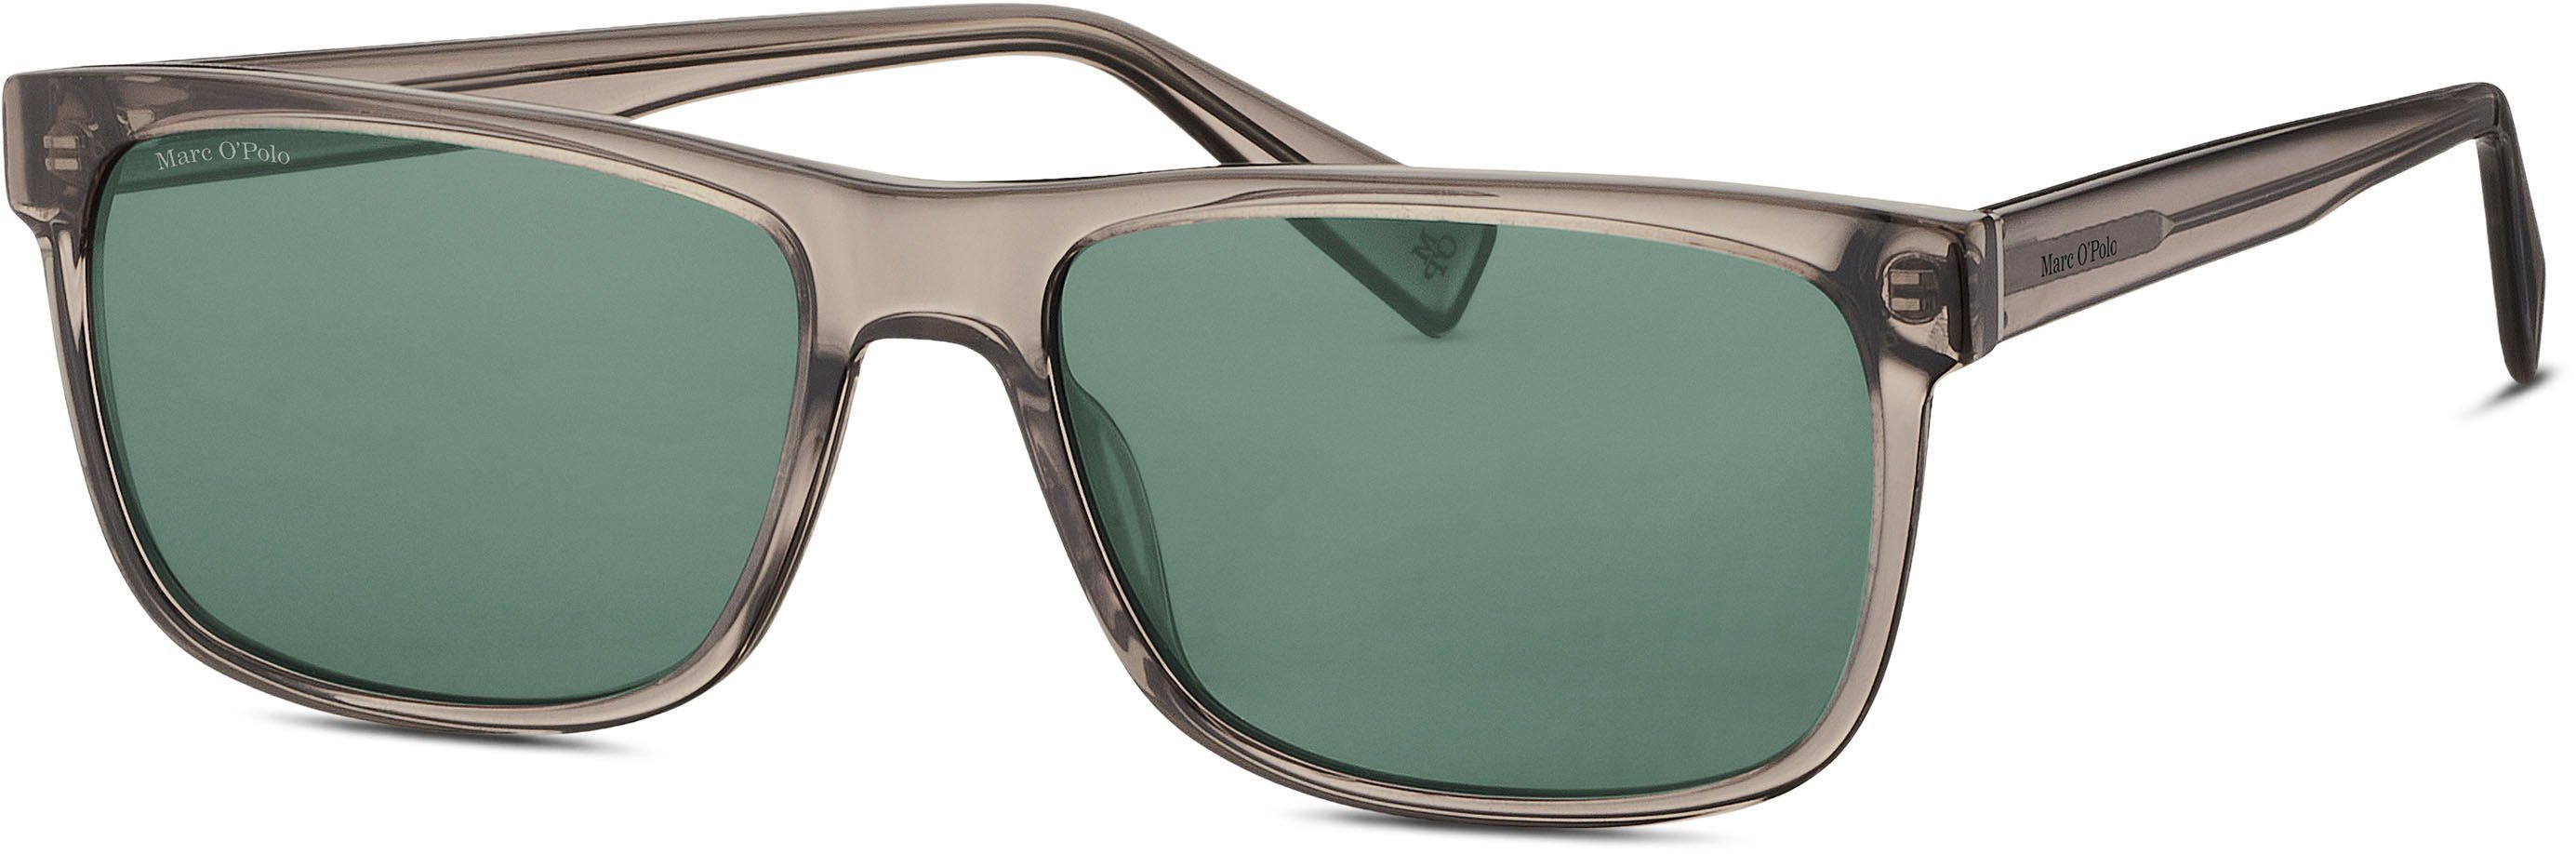 506192 Modell O'Polo Marc Sonnenbrille